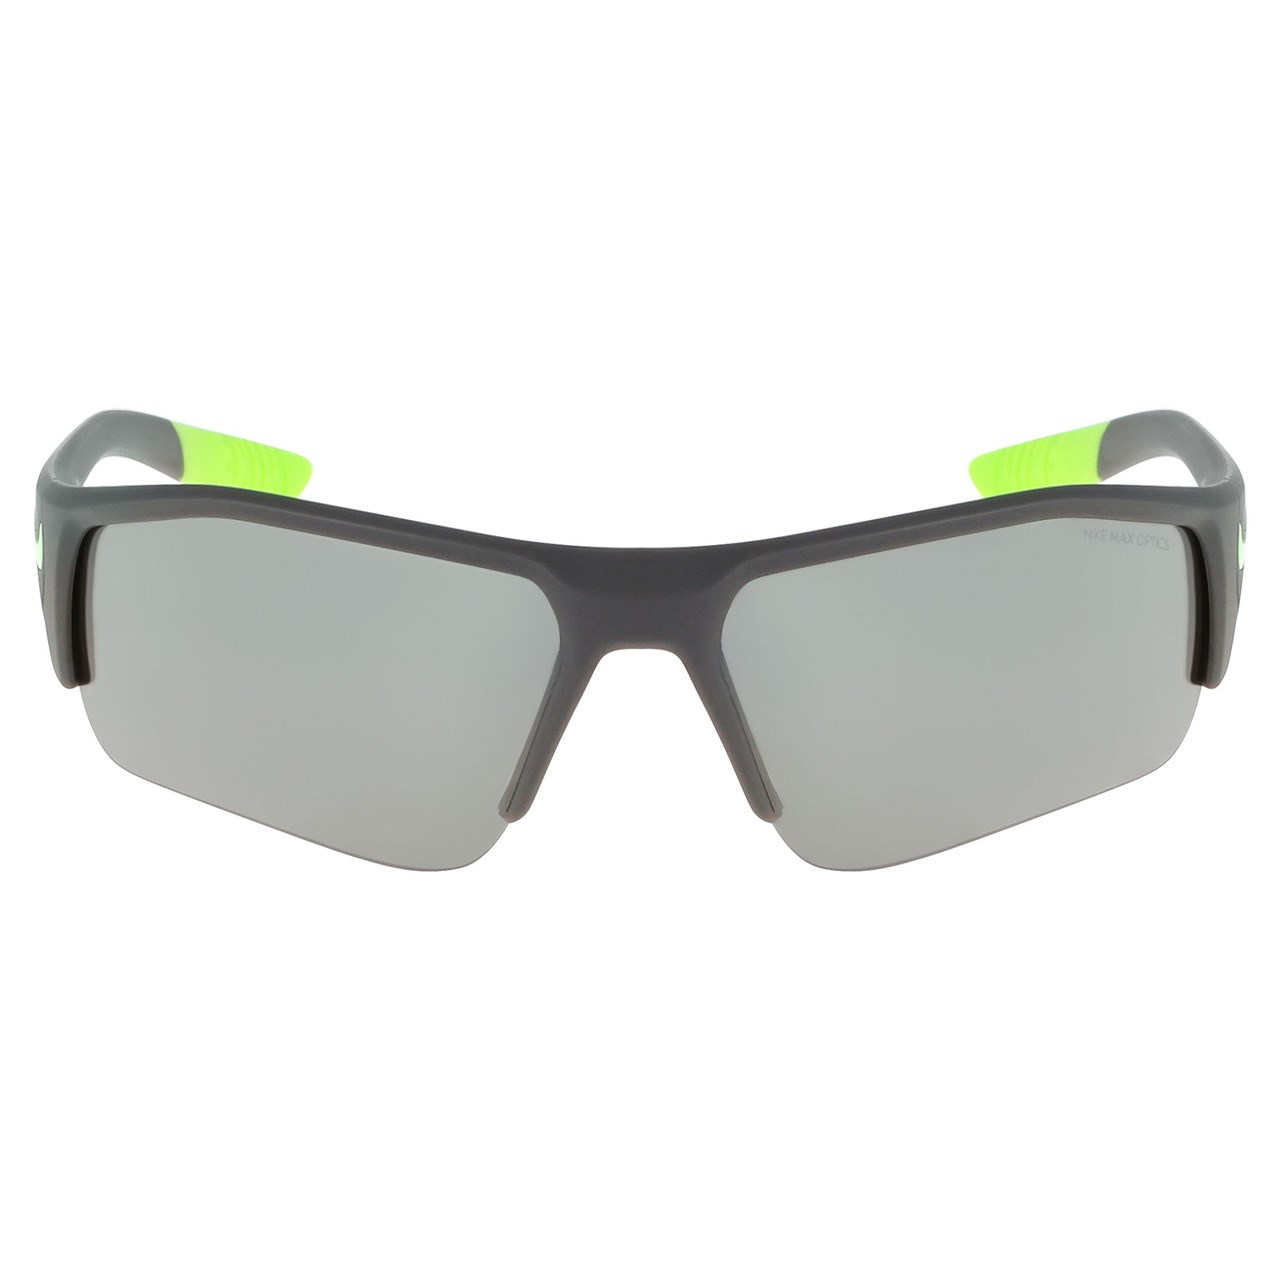 عینک آفتابی نایکی سری SKYLON ACE مدل 003-Ev 900